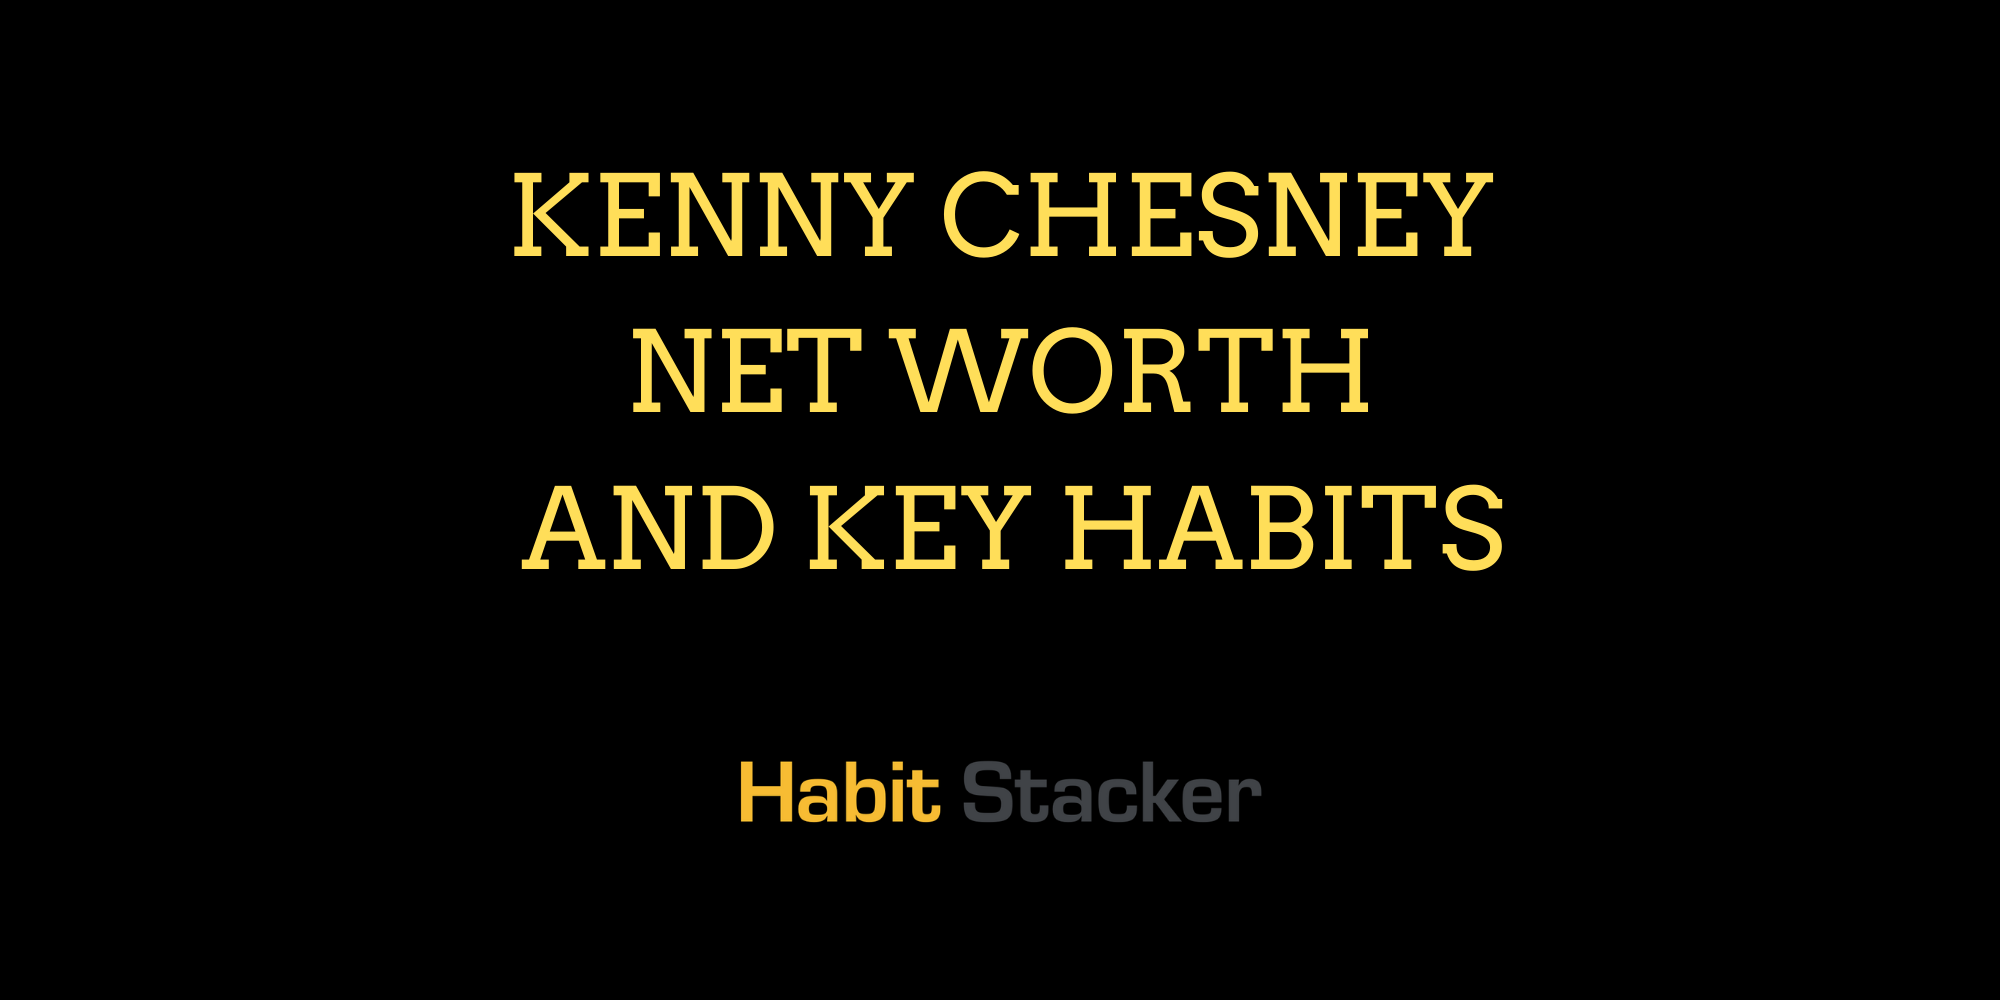 Kenny Chesney Net Worth and Key Habits